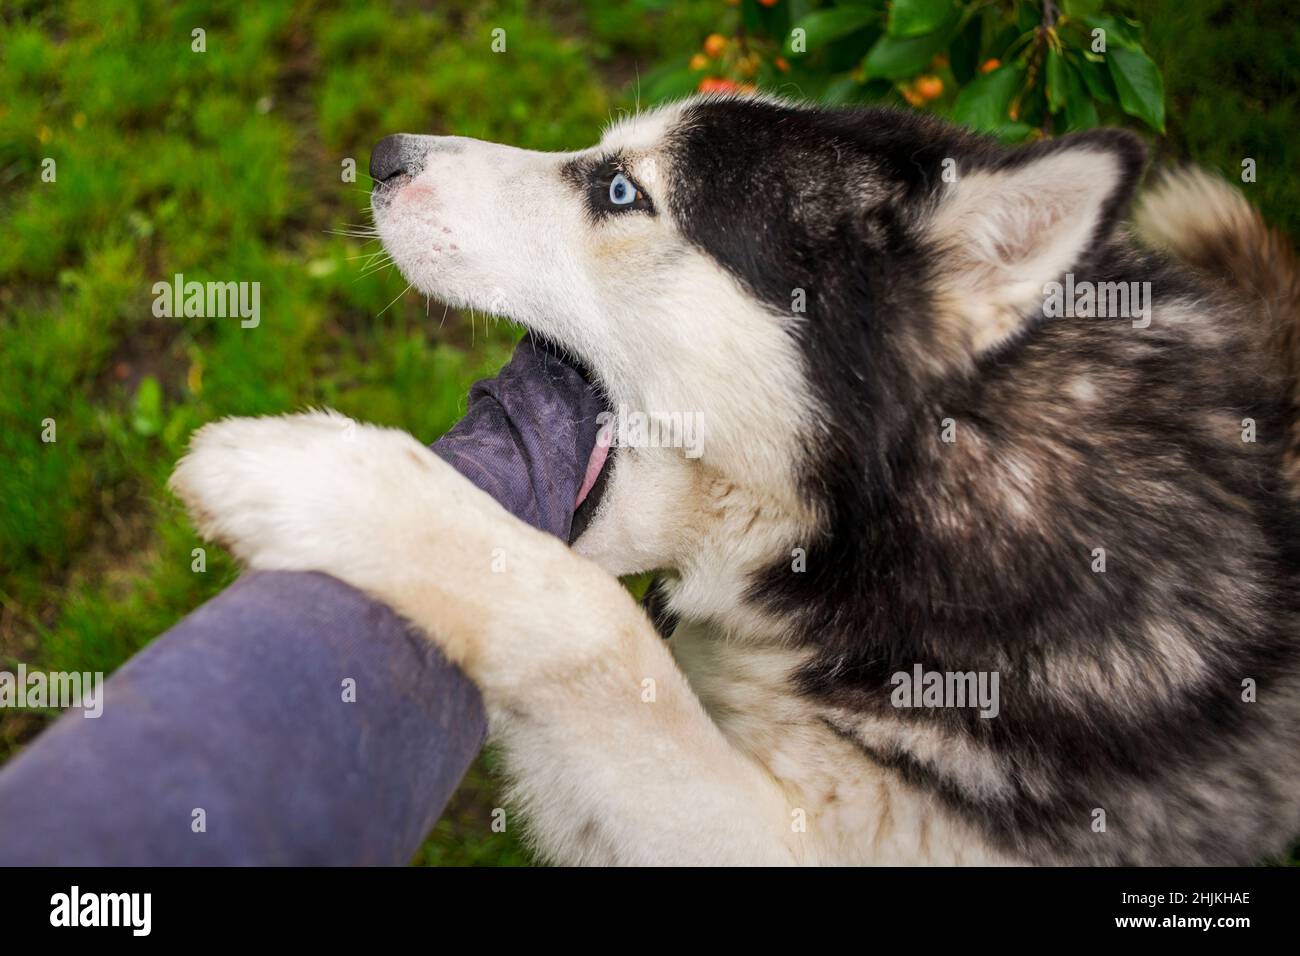 Giovane cane Husky razza sta cercando di mordere mano umana. Pericoloso cane morde mano di mans. Foto Stock